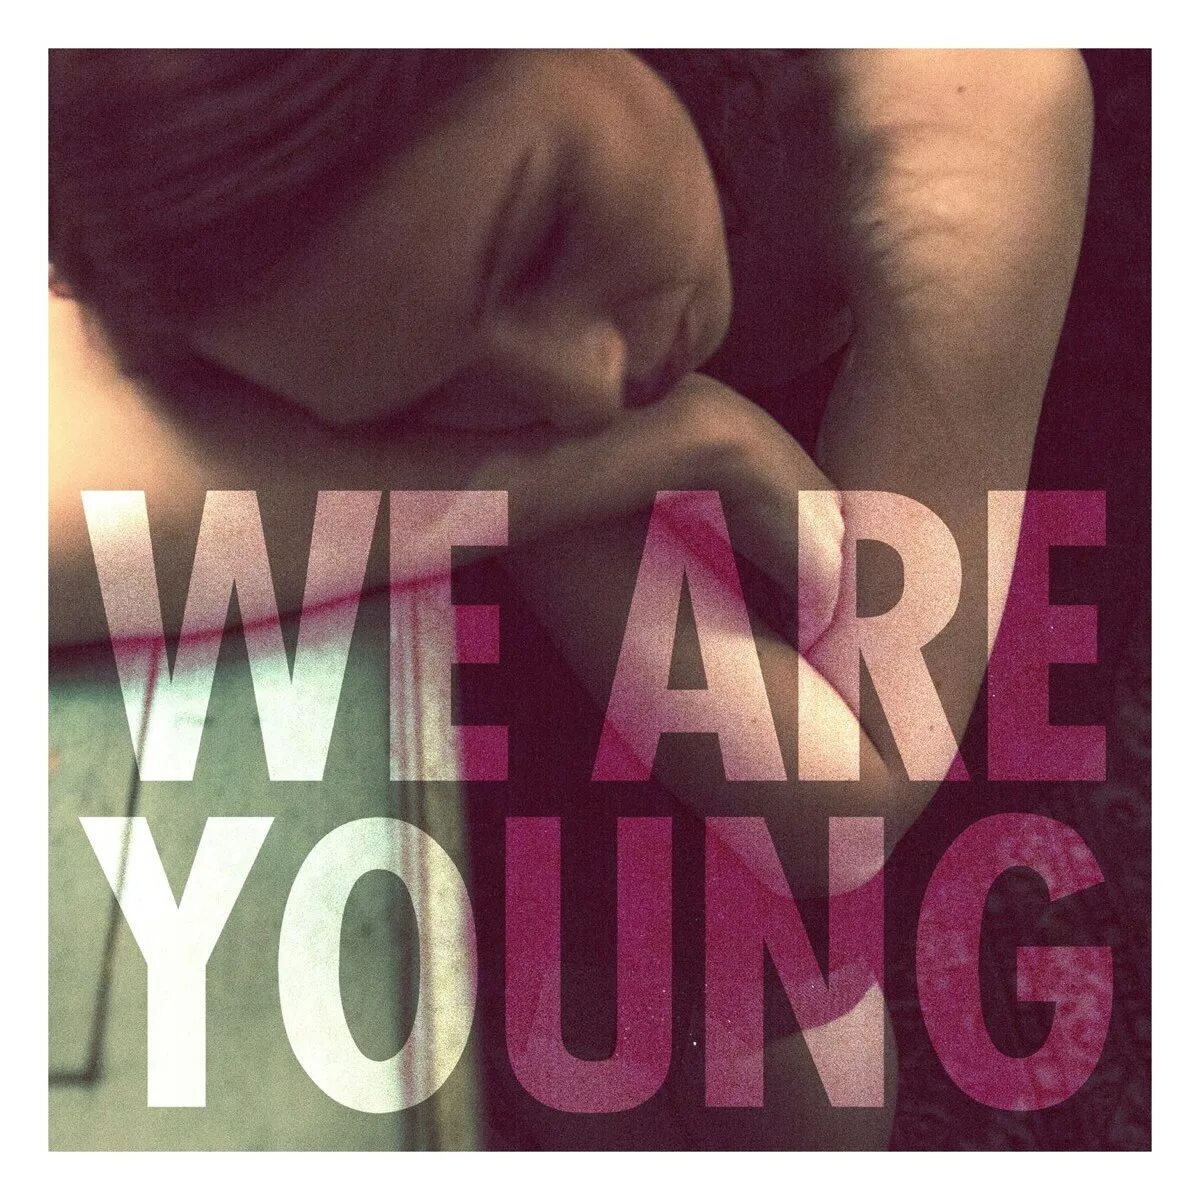 When we fun. Fun we are young обложка. Fun. We are young feat. Janelle Monáe. Fun Janelle Monae. Обложка сингла.